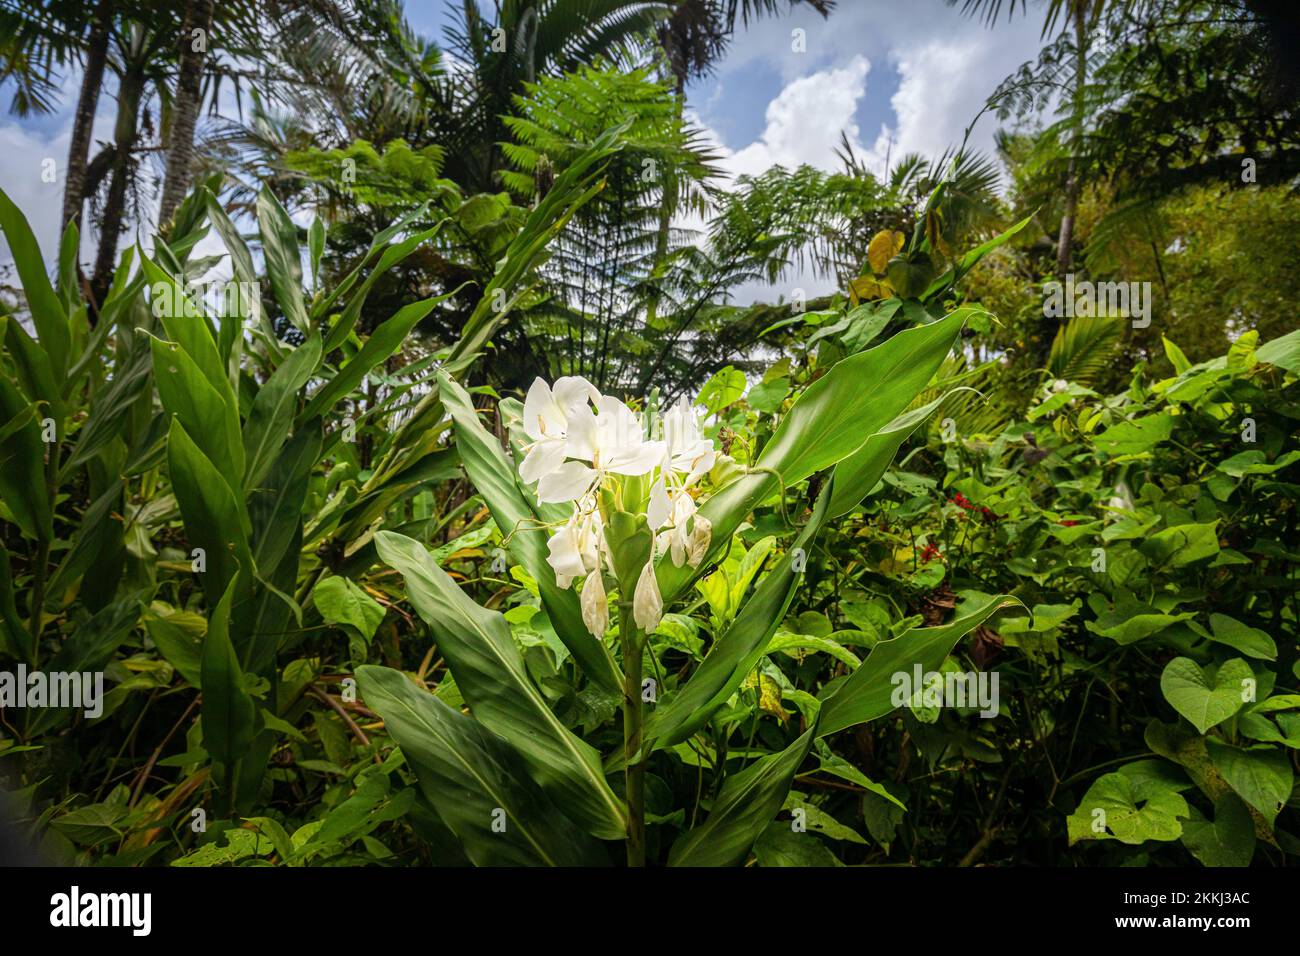 Wild Garland Flower oder Ginger Lily (Hedychium forresti) im El Yunque Rainforest National Park auf der tropischen karibischen Insel Puerto Rico, USA. Stockfoto